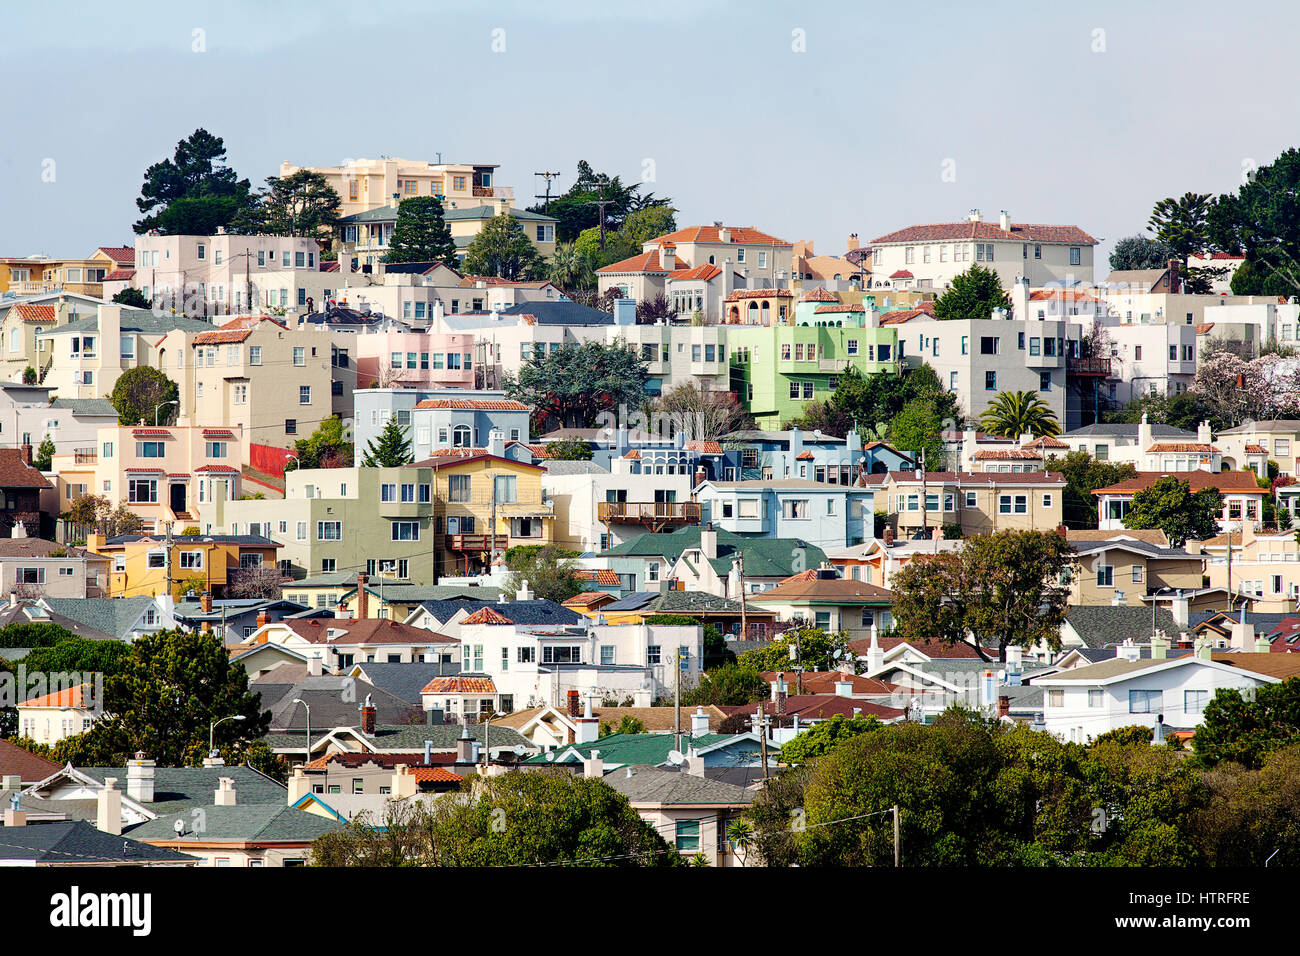 Hang mit Häusern in einem Viertel von San Francisco überfüllt. Stockfoto